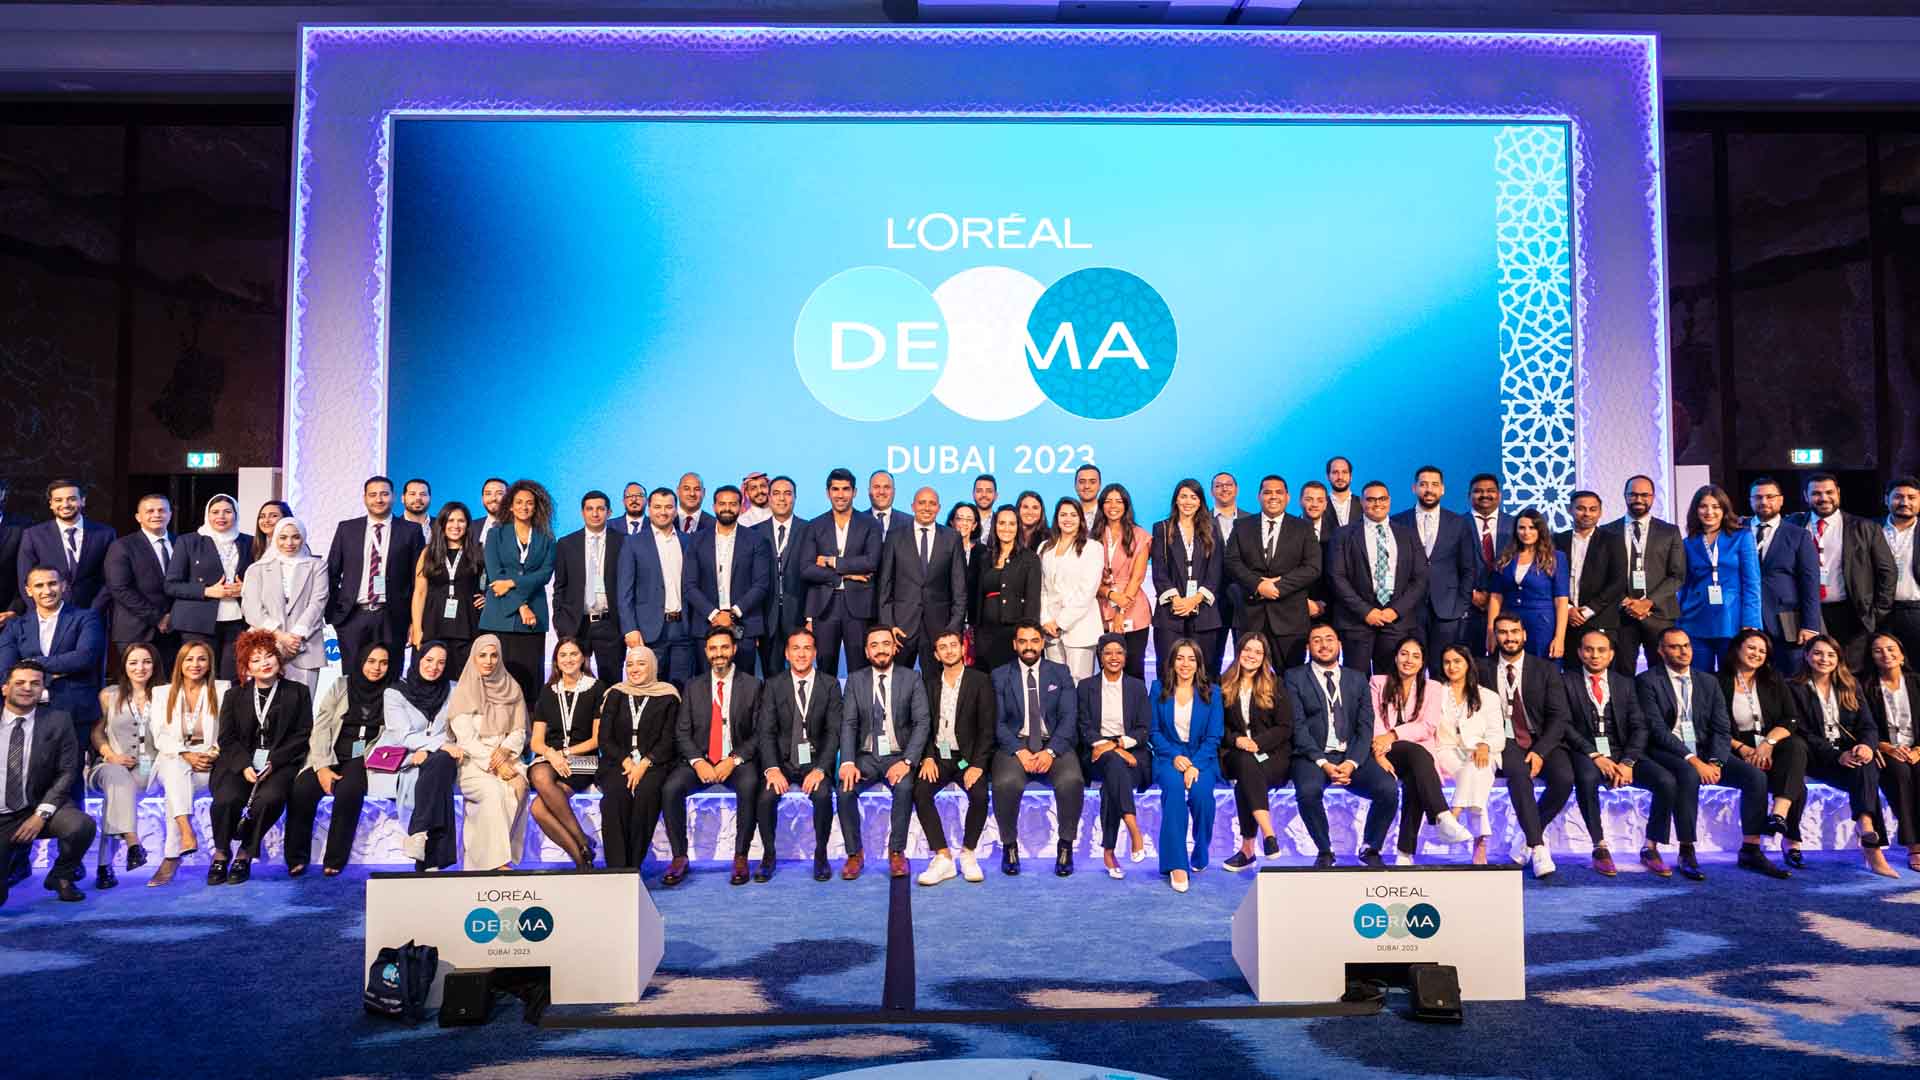 الإحتفال بالنسخة الرابعة لمؤتمر "لوريال ديرما" في دبي-الإمارات العربية المتحدة